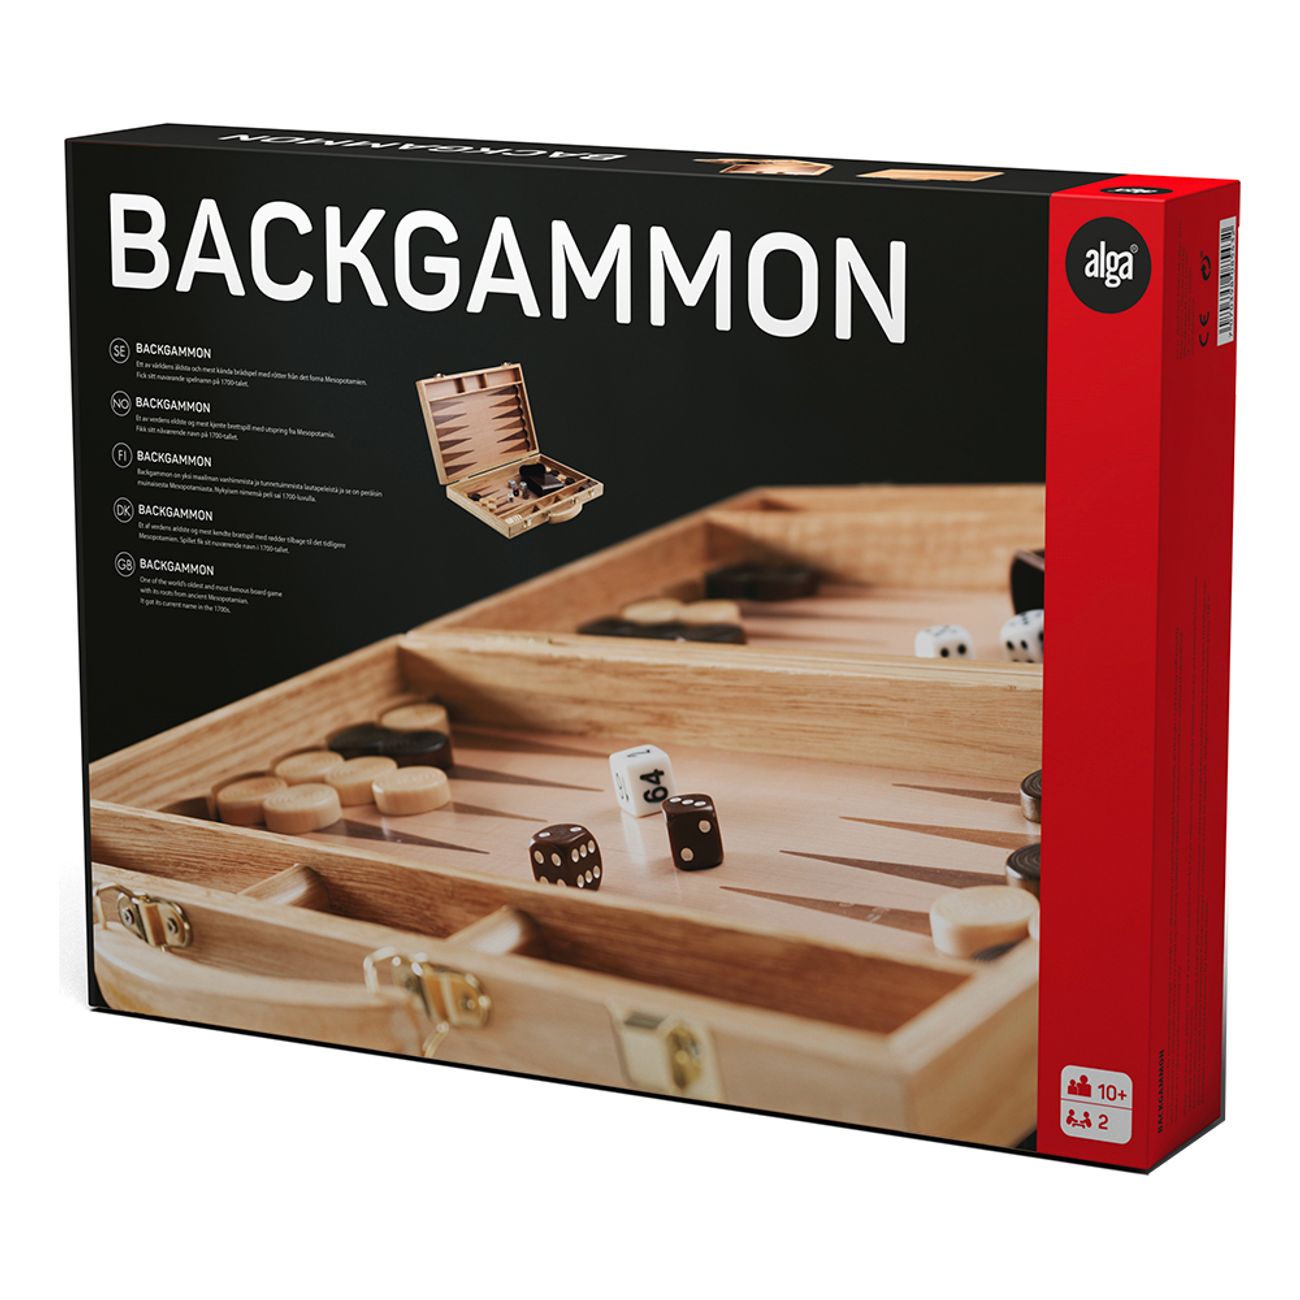 alga-backgammon-1